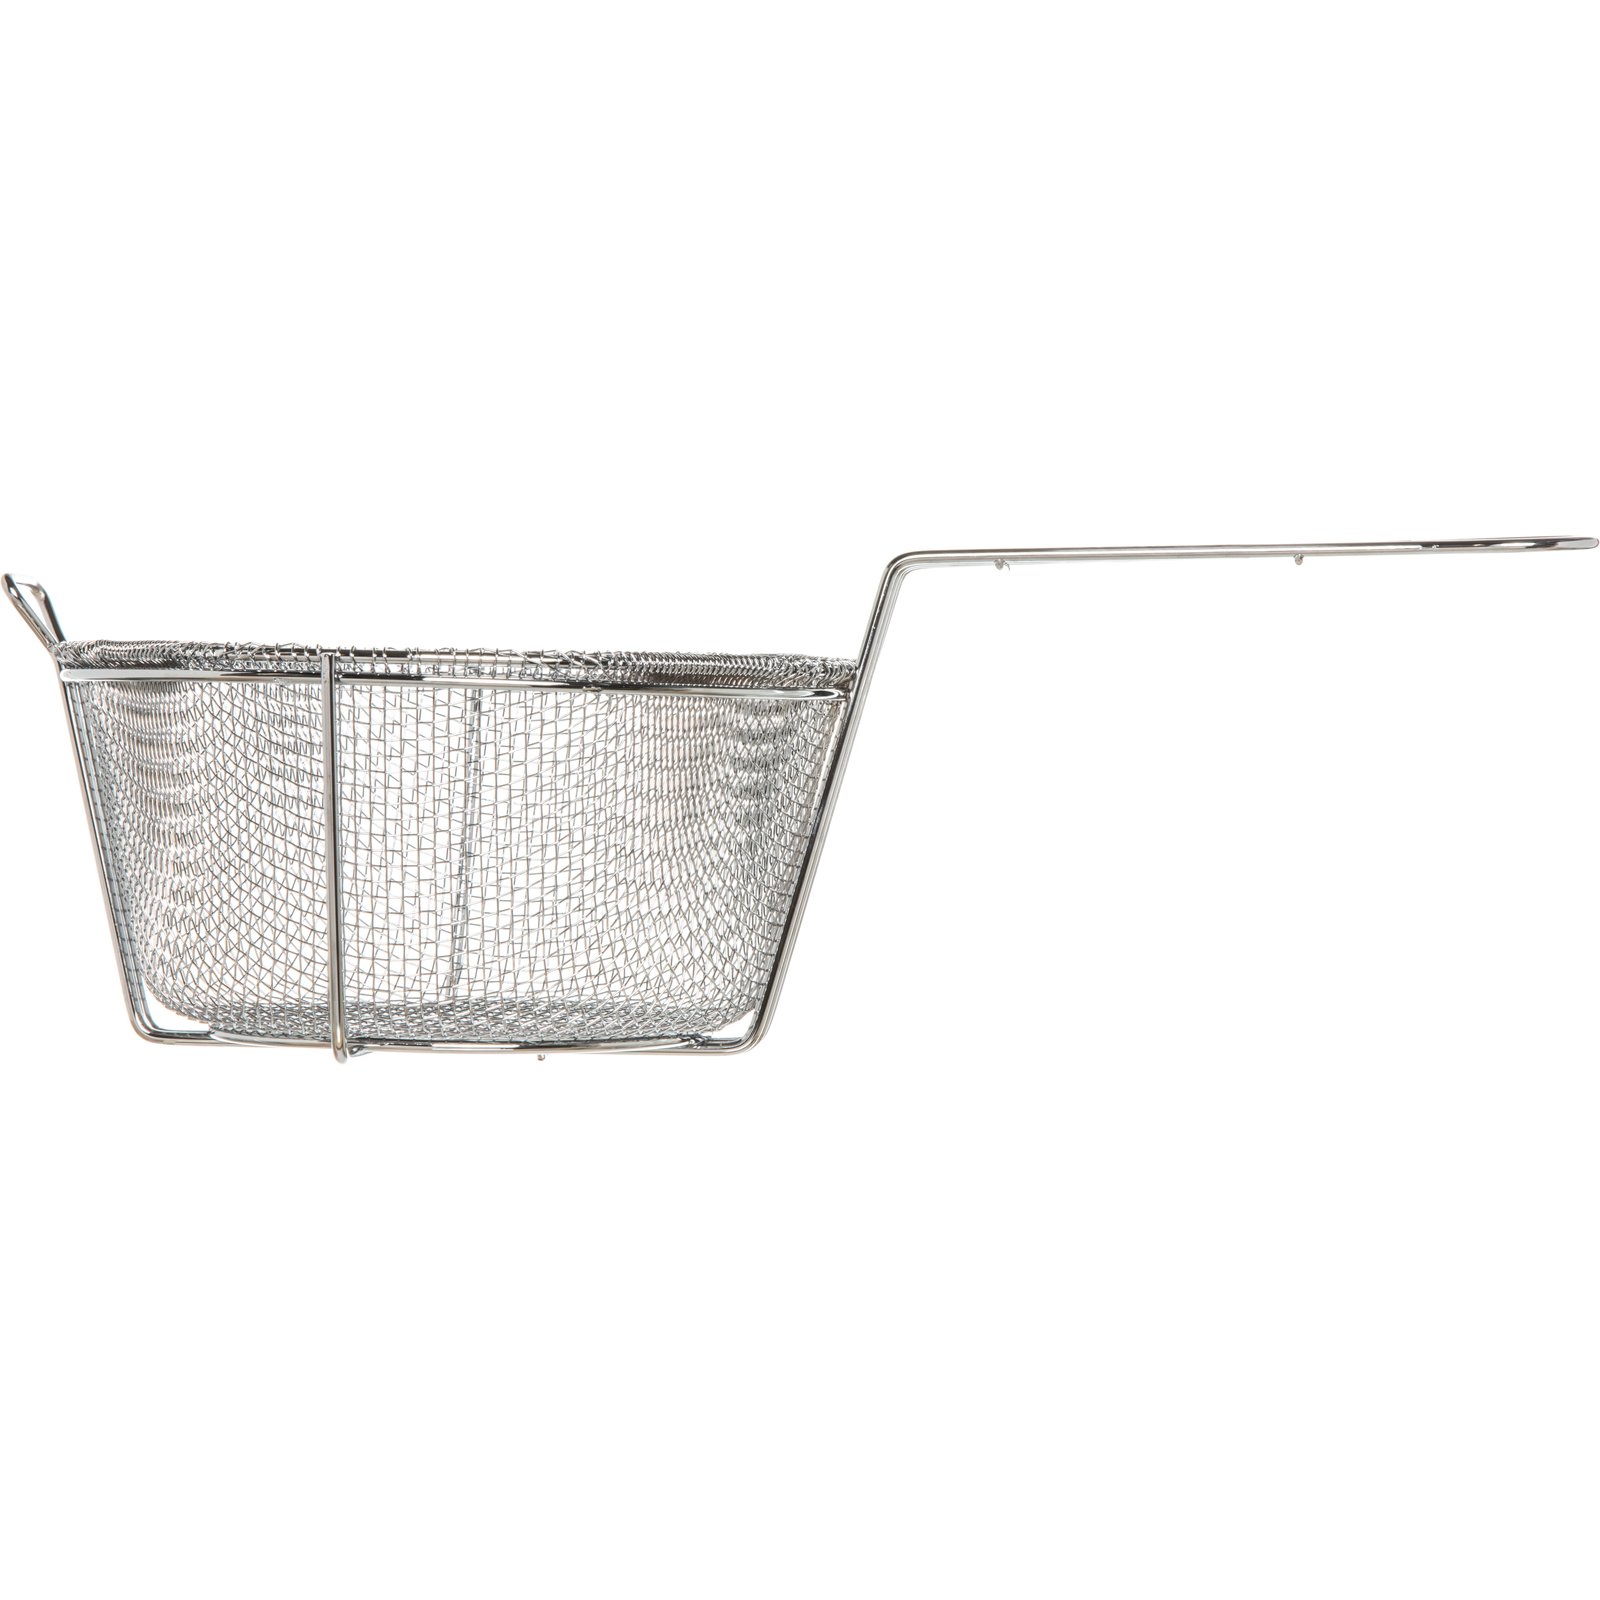 E-Z Grip® fryer basket 16-3/4" x 8-3/4"FMP #225-5003 